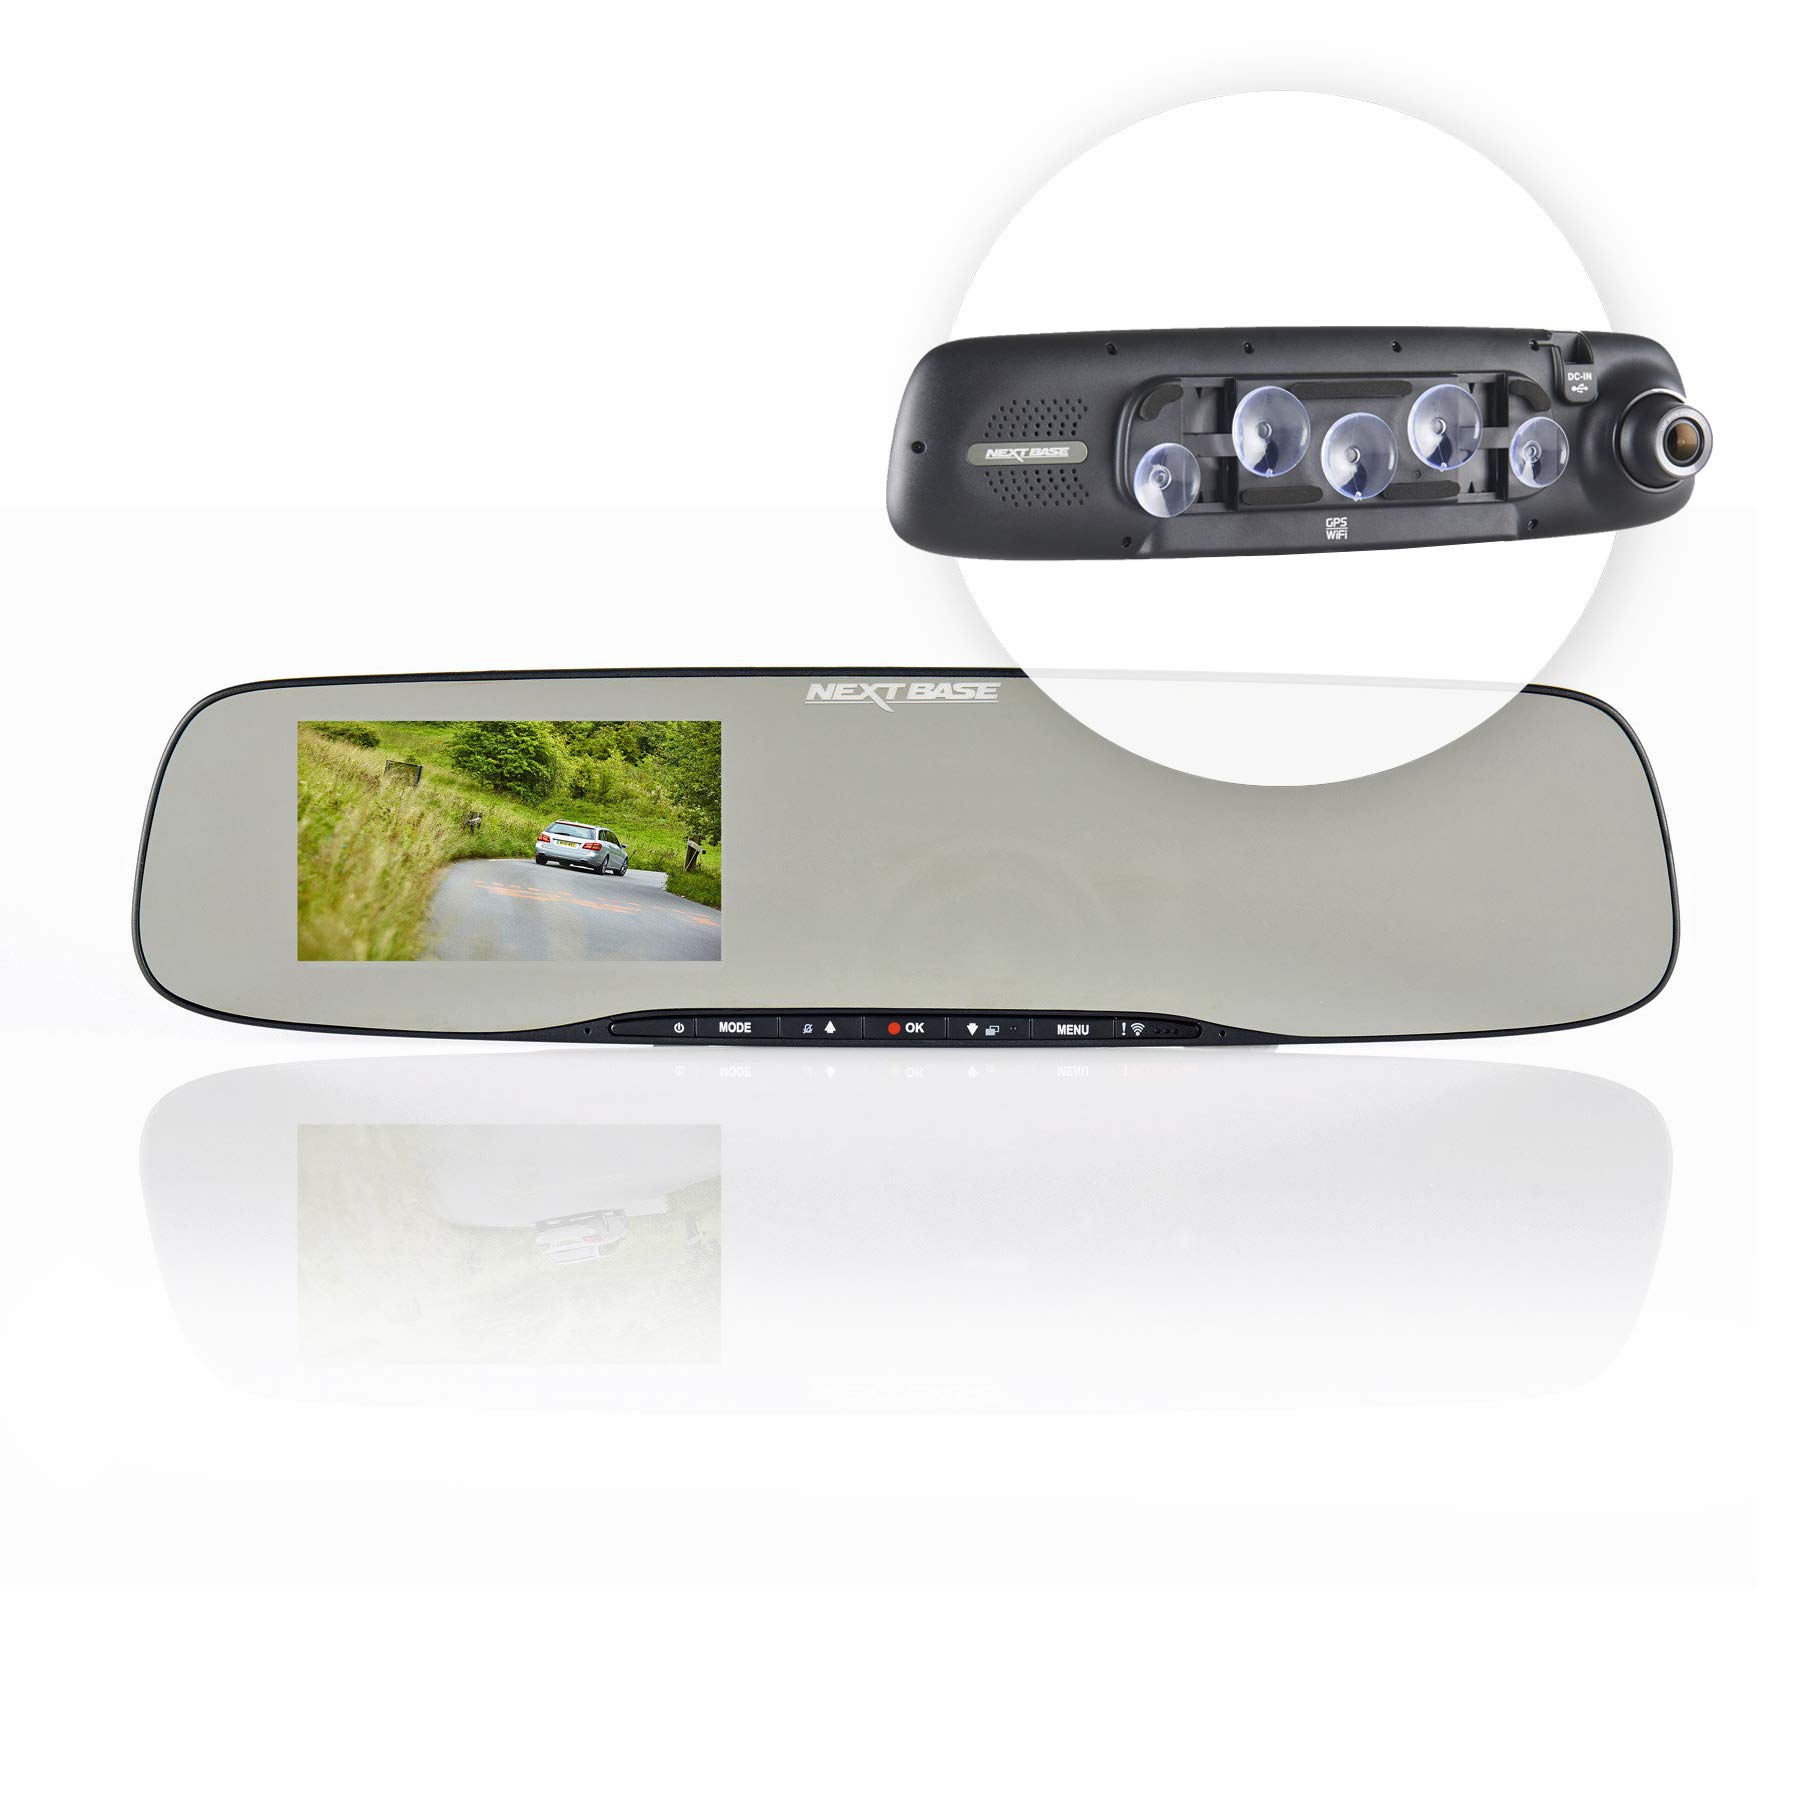 Nextbase Mirror – Full HD 1080p Rückspiegel Dashcam Überwachungskamera & Spiegel Auto-Kamera mit GPS, DVR, WiFi & erweiterter Nachtsicht – KFZ Frontkamera zur Überwachung (Schwarz)